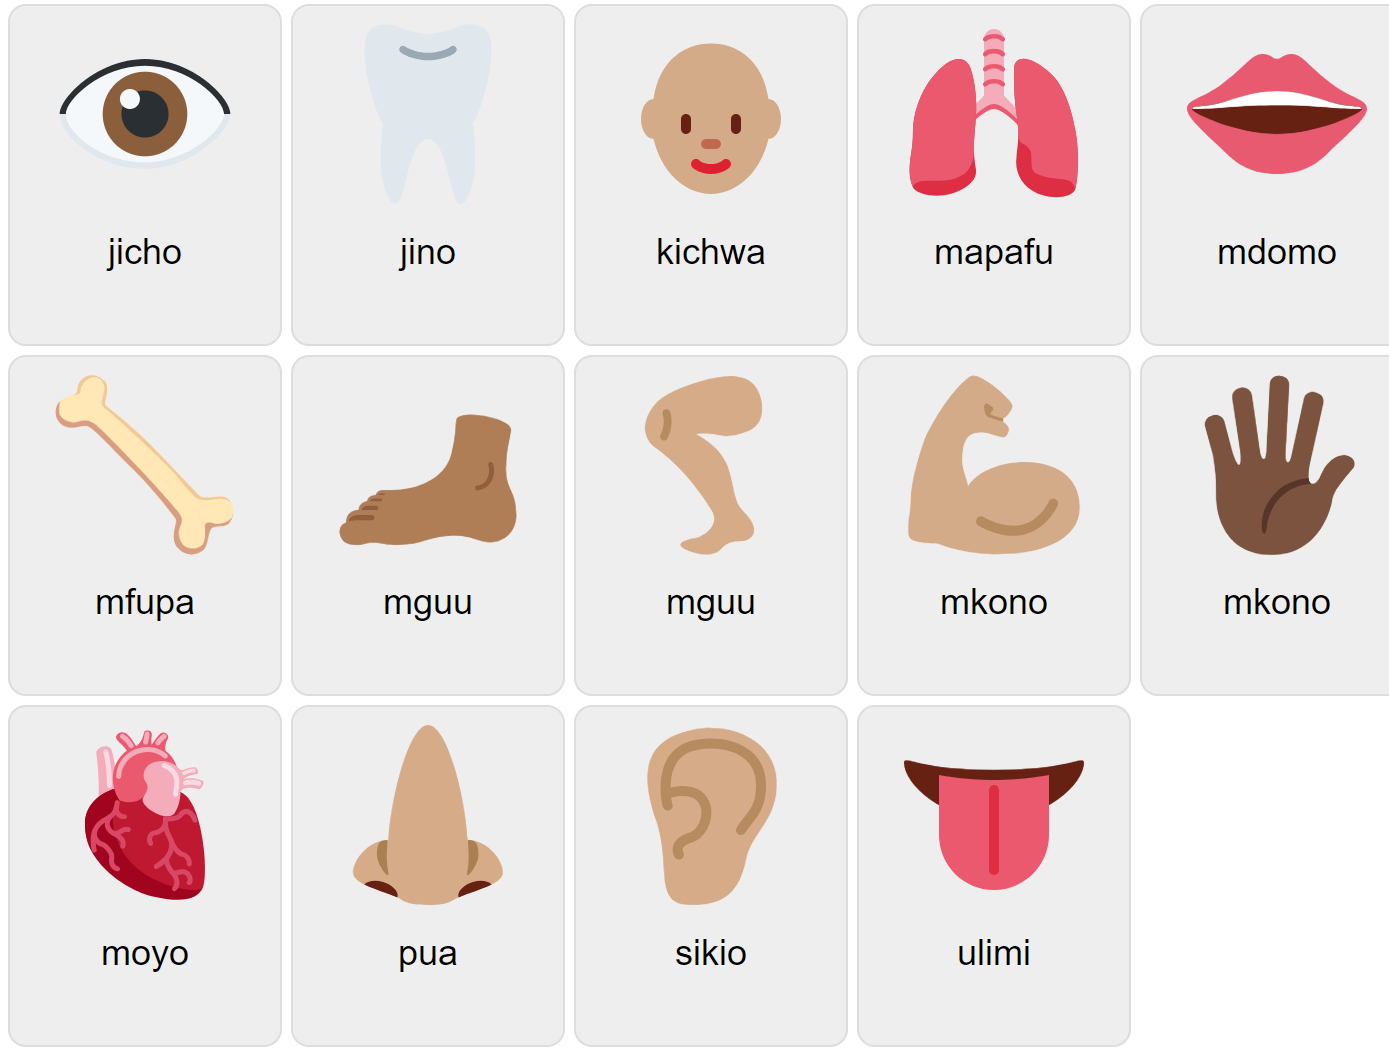 Kroppsdelar på swahili